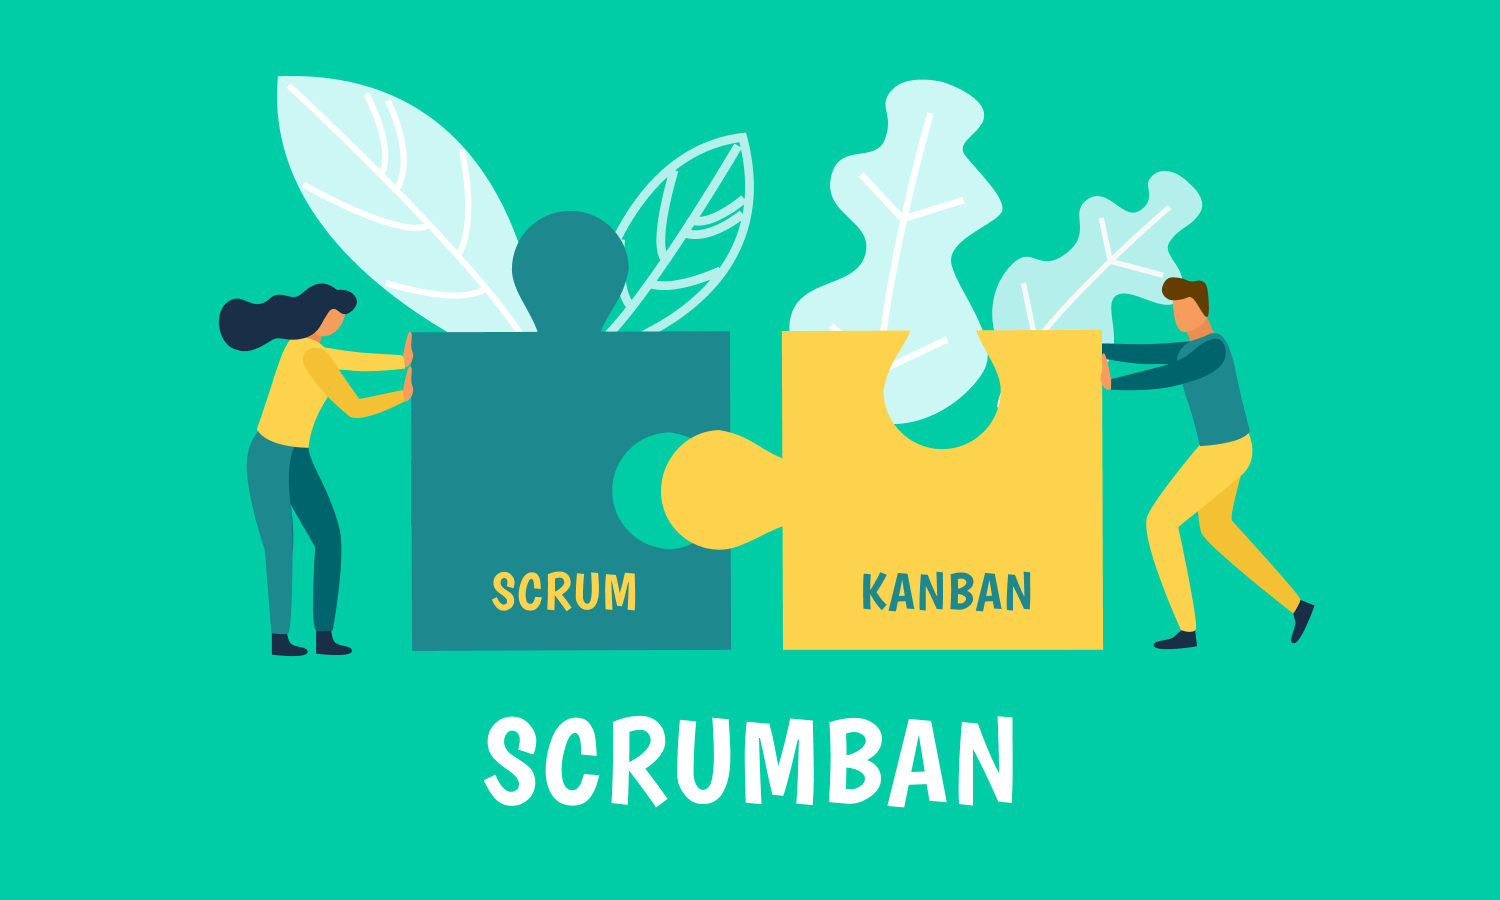 Scrumban - kanban vs scrum